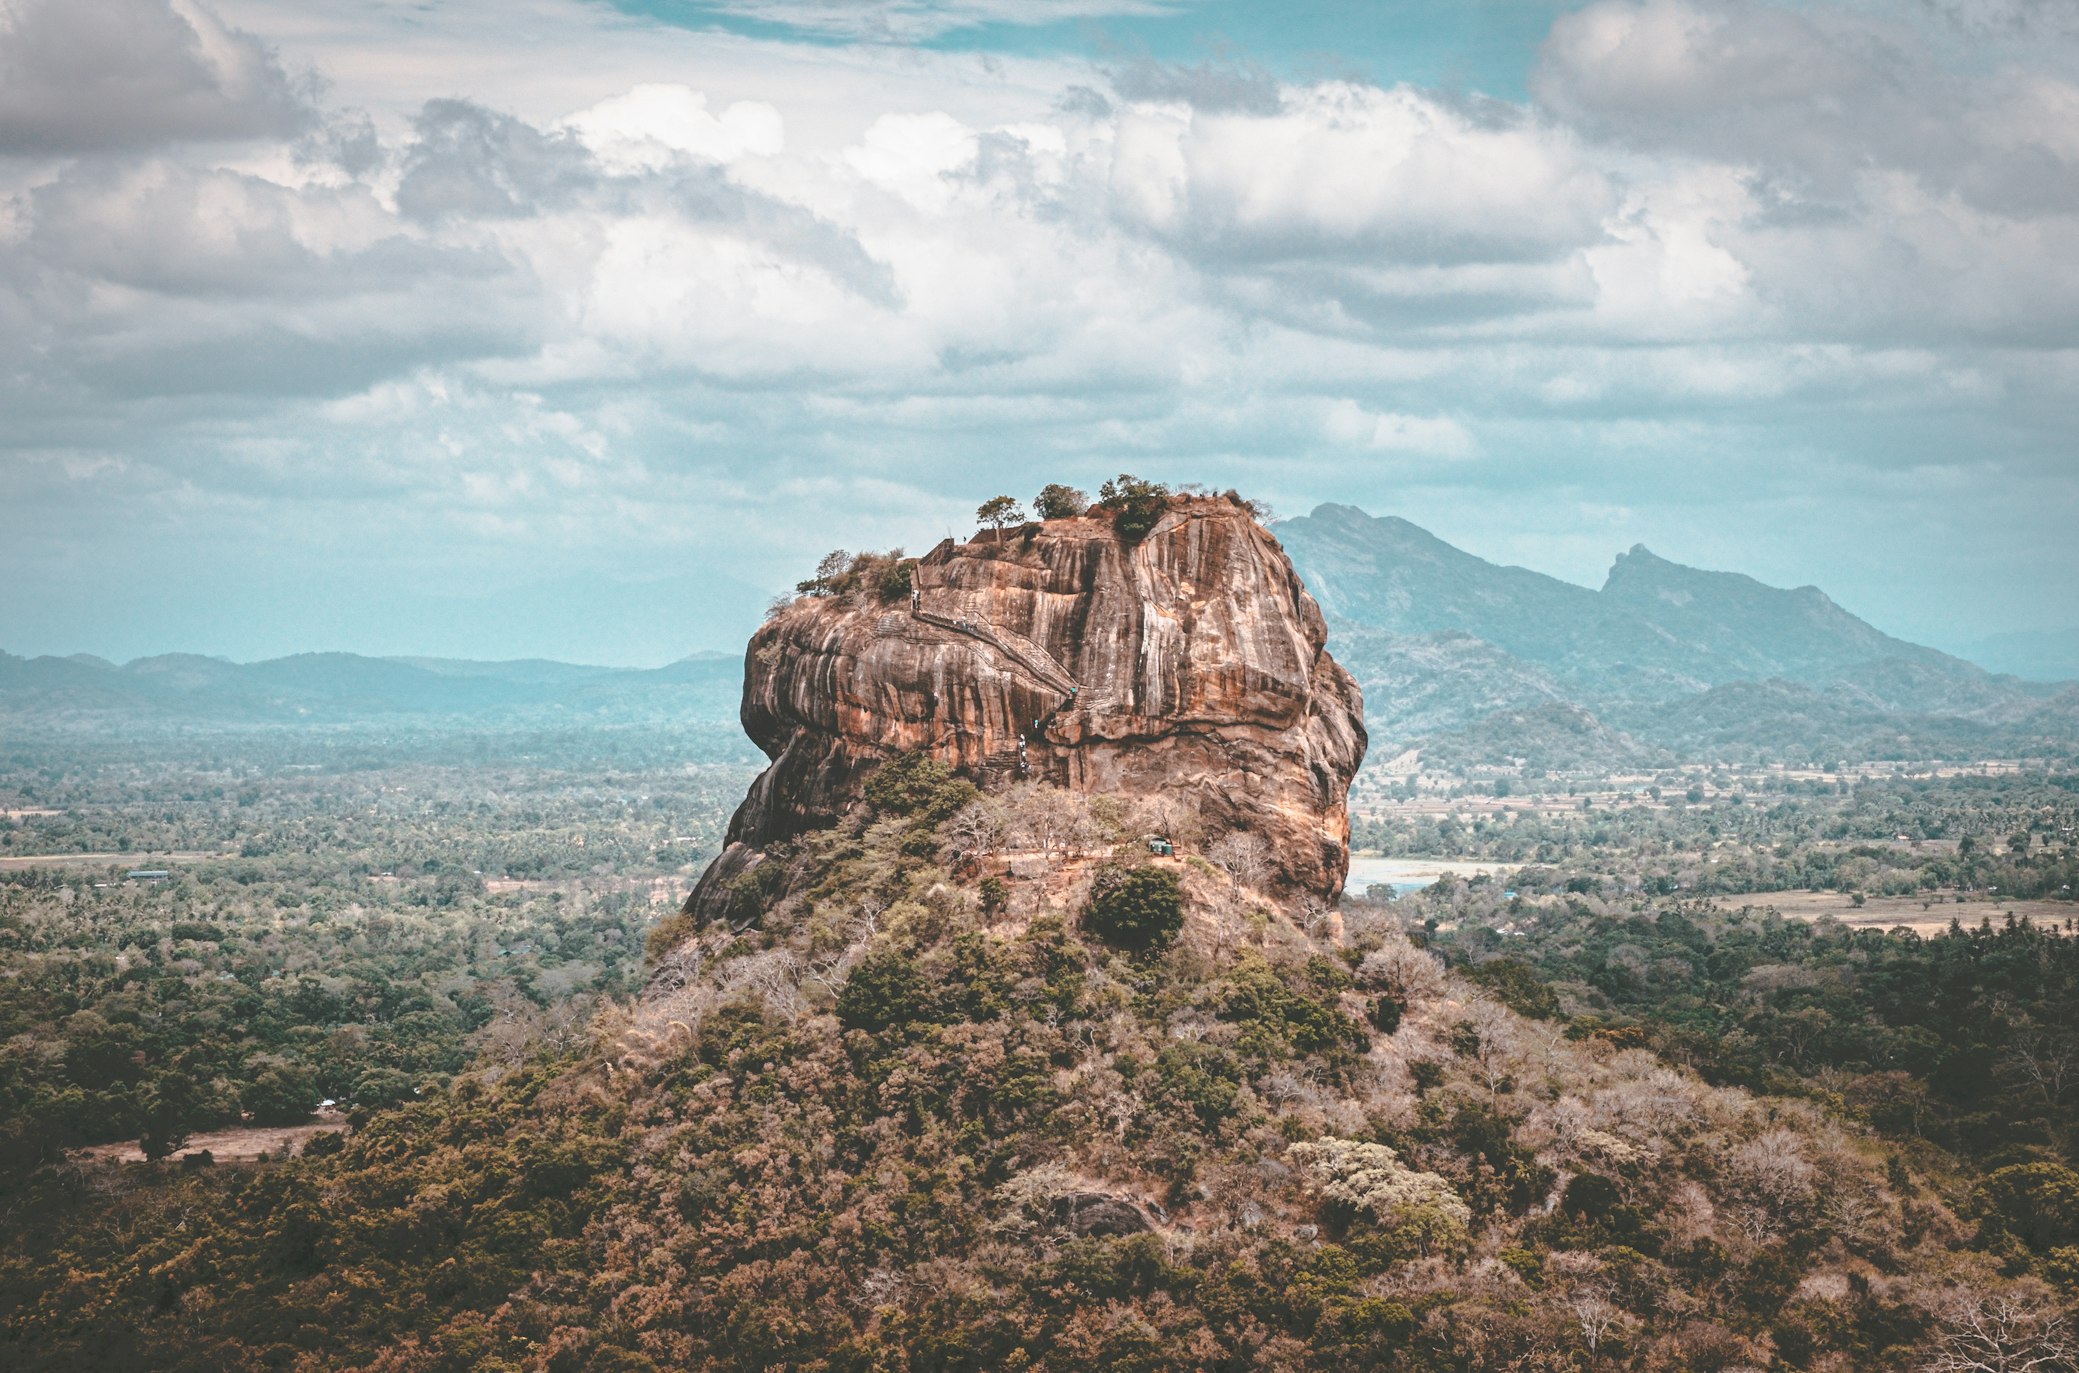 La Lion's Rock in Sri Lanka